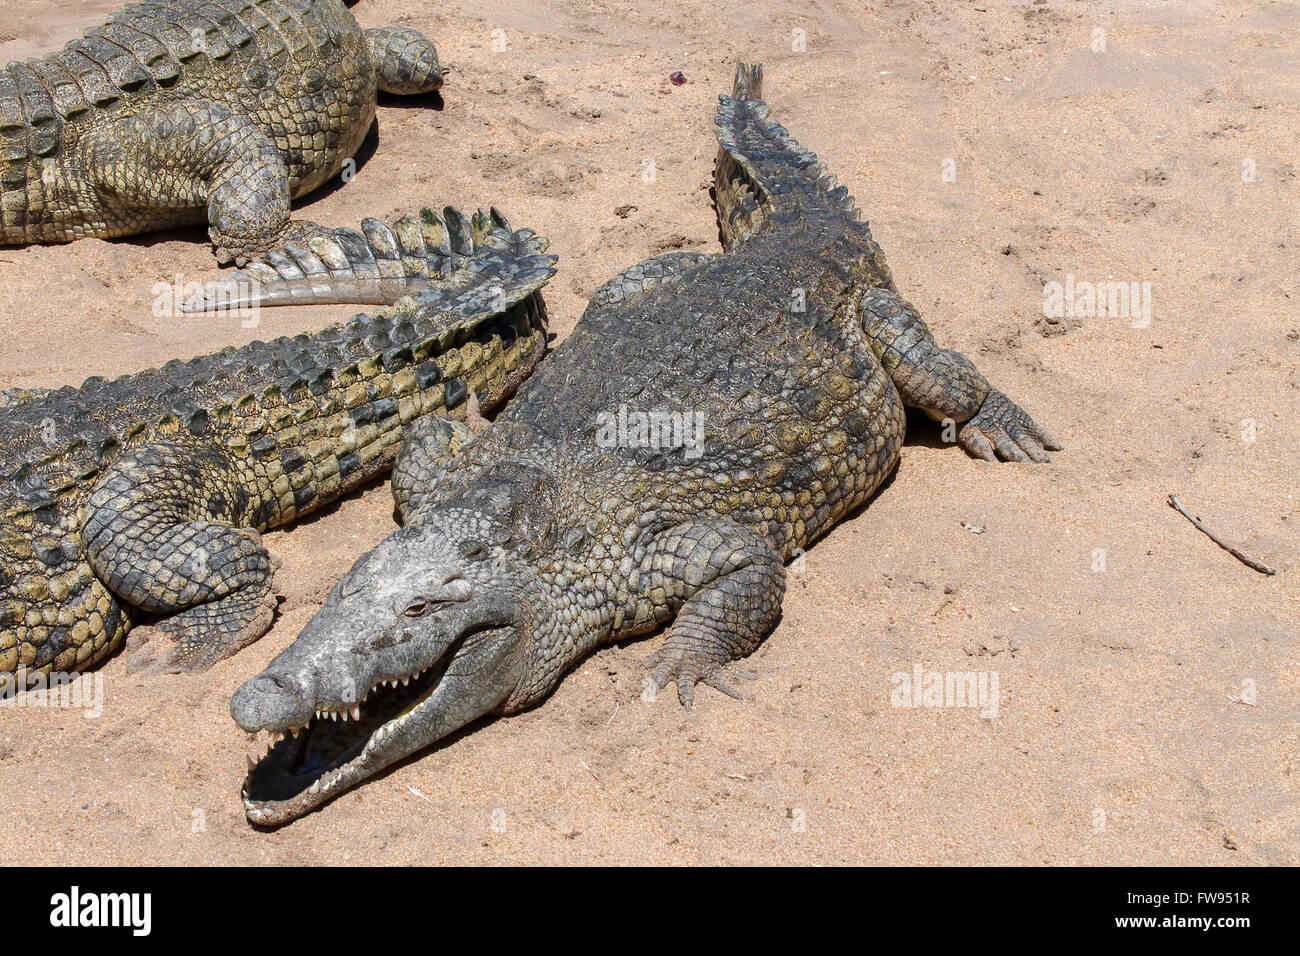 Un cocodrilo grande posa para una foto, mientras espera su comida de los rangers. Foto de stock